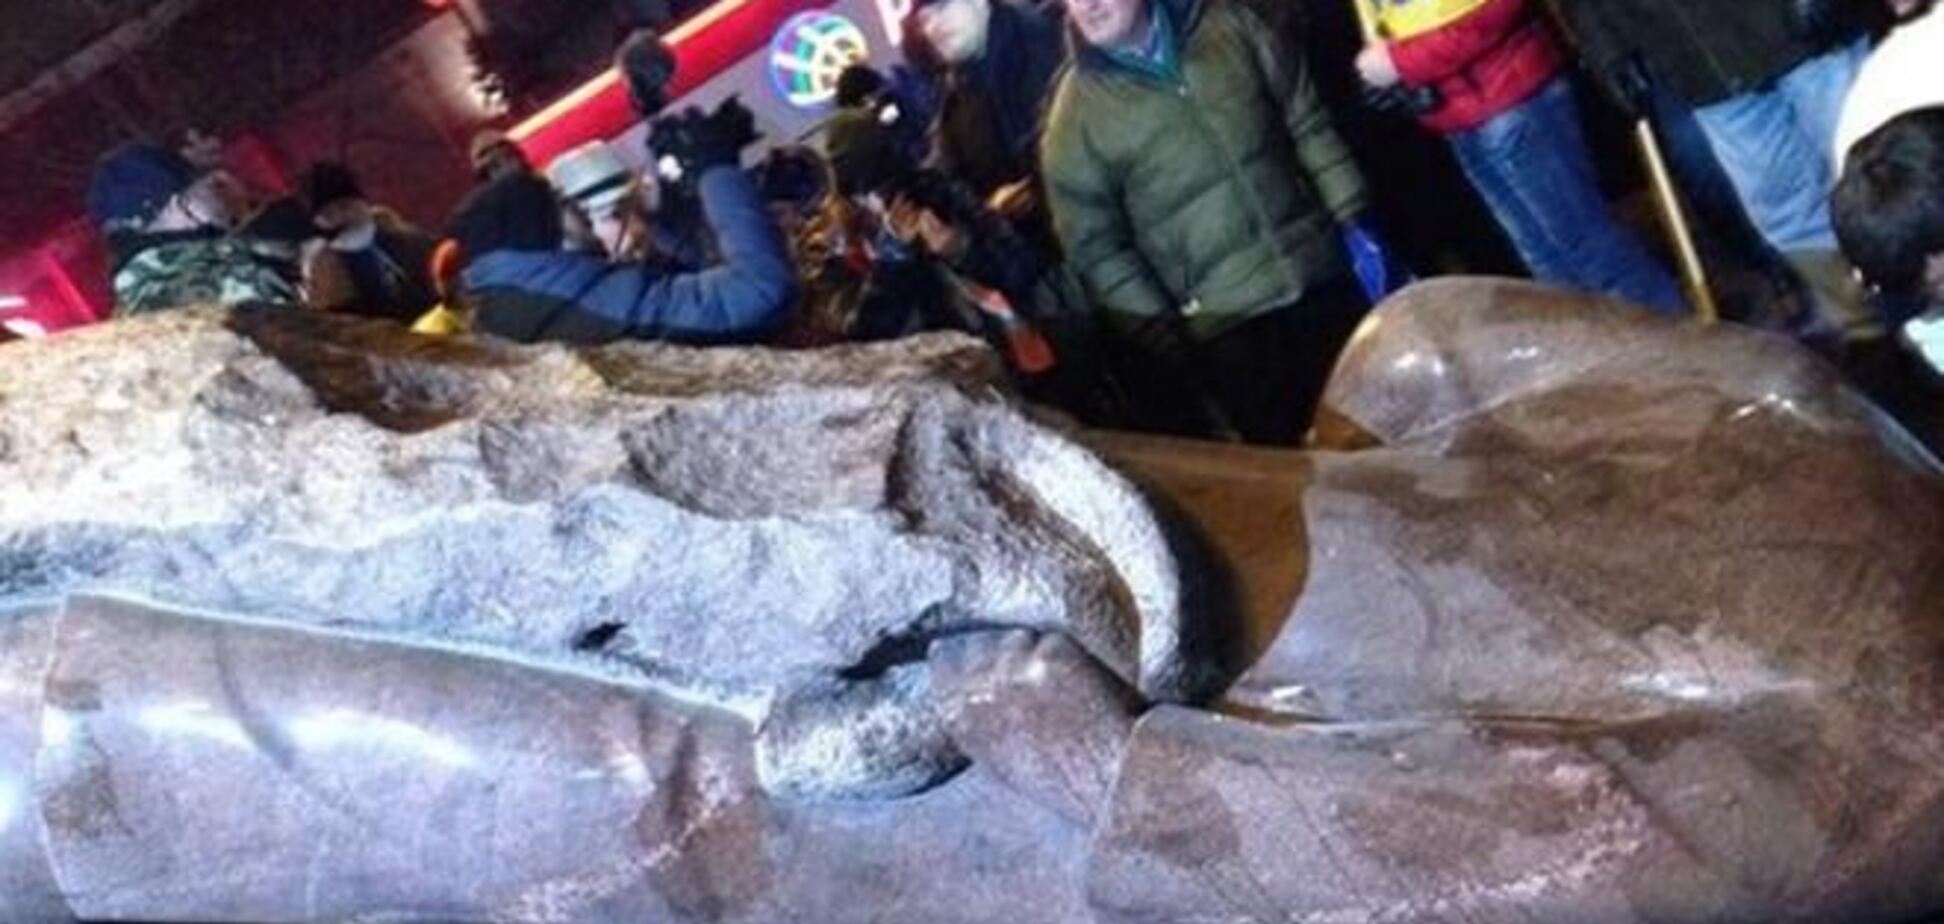 Симоненко: Снос памятника Ленину в Киеве — это проявление 'демократических' ценностей Европы